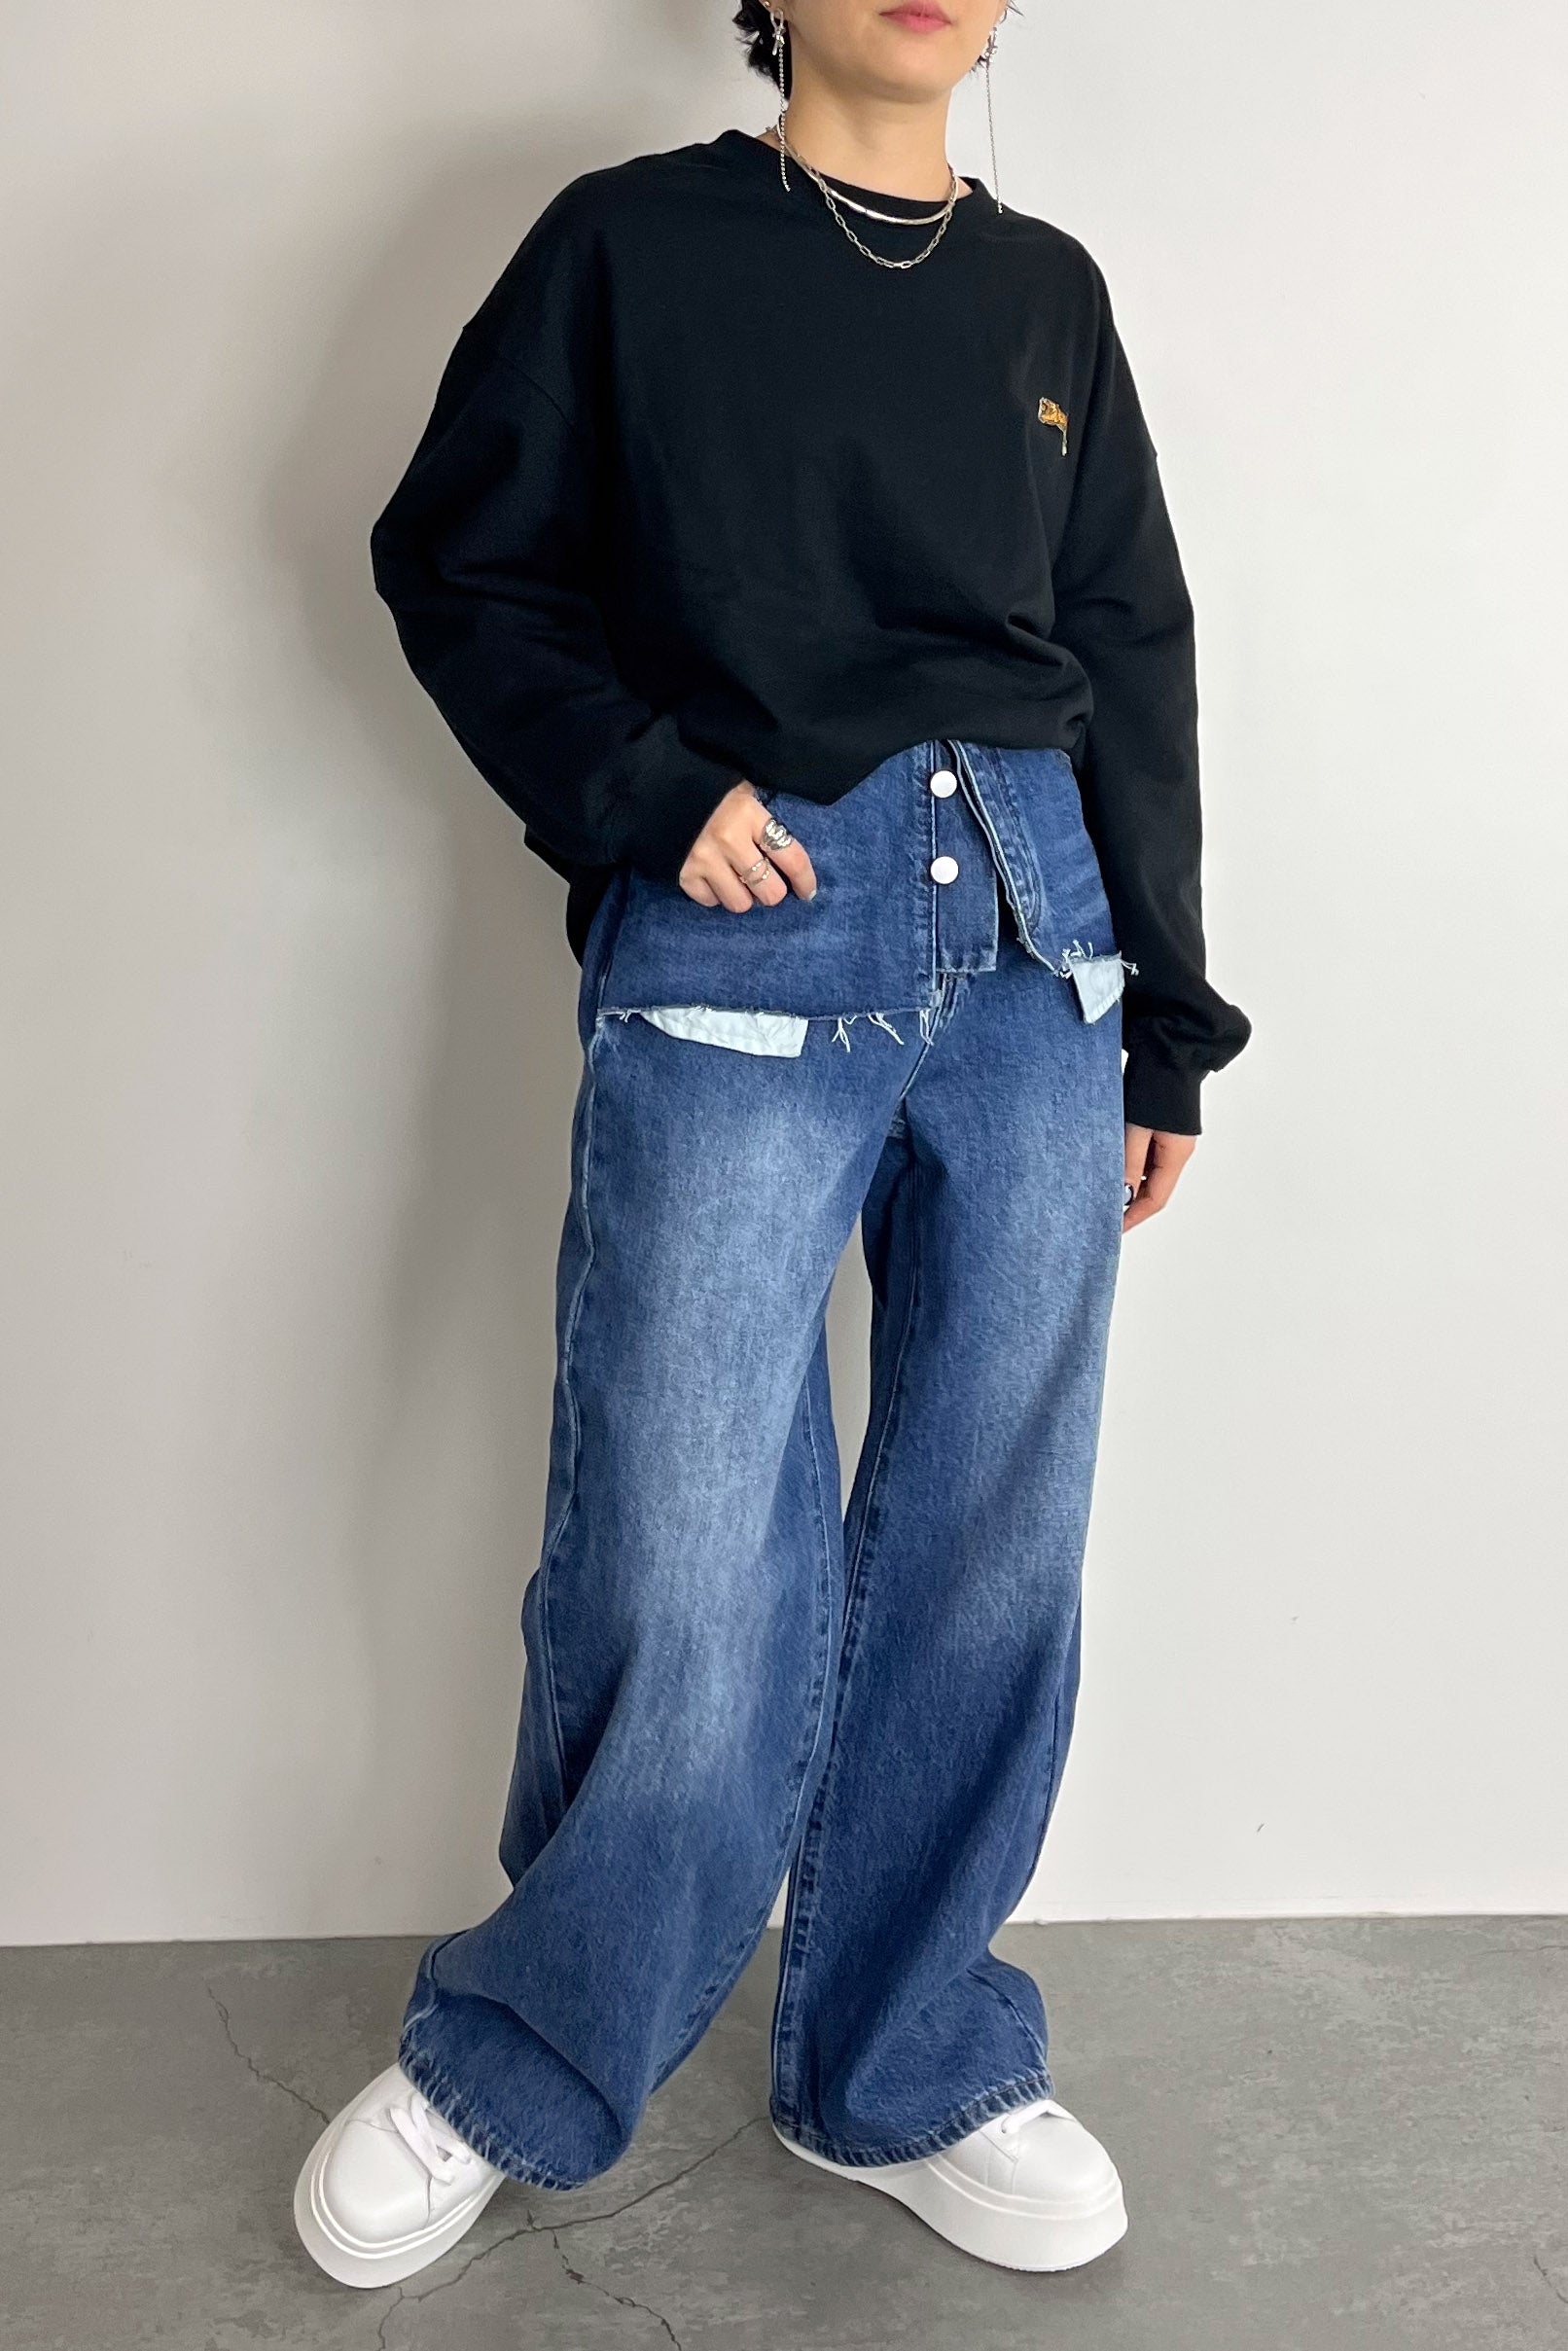 MICALLE MICALLE (ミカーレミカーレ) リメイク風 デニム パンツ ポケット 韓国風